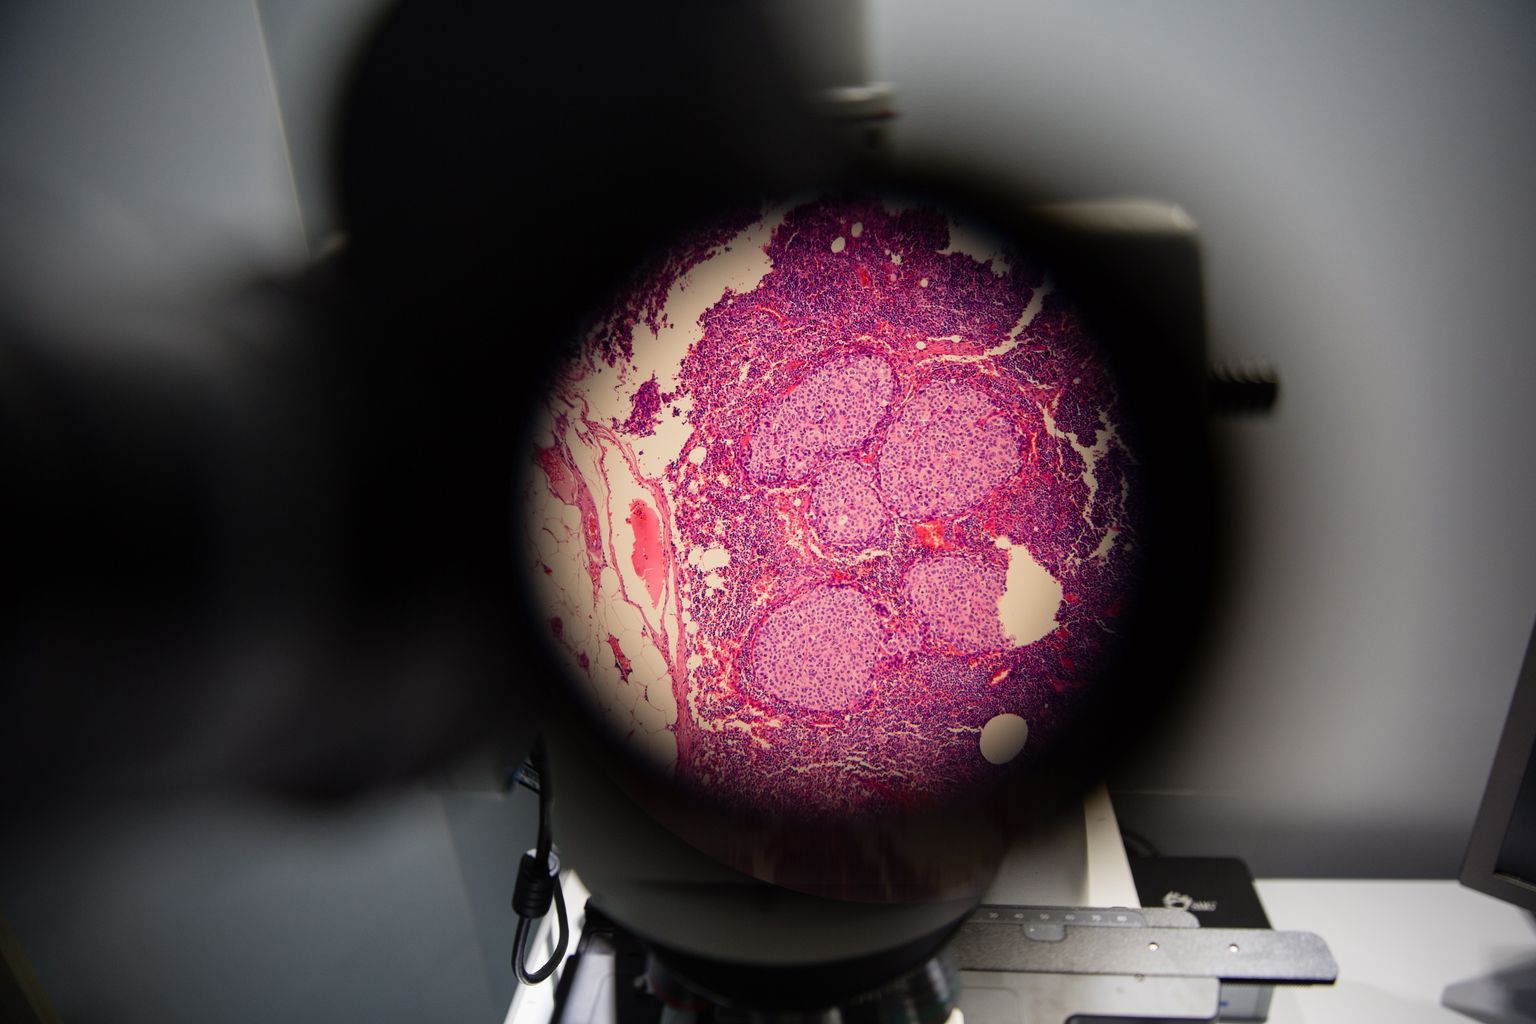 Vähirakud mikroskoobi all. Pilt on illustreeriv.